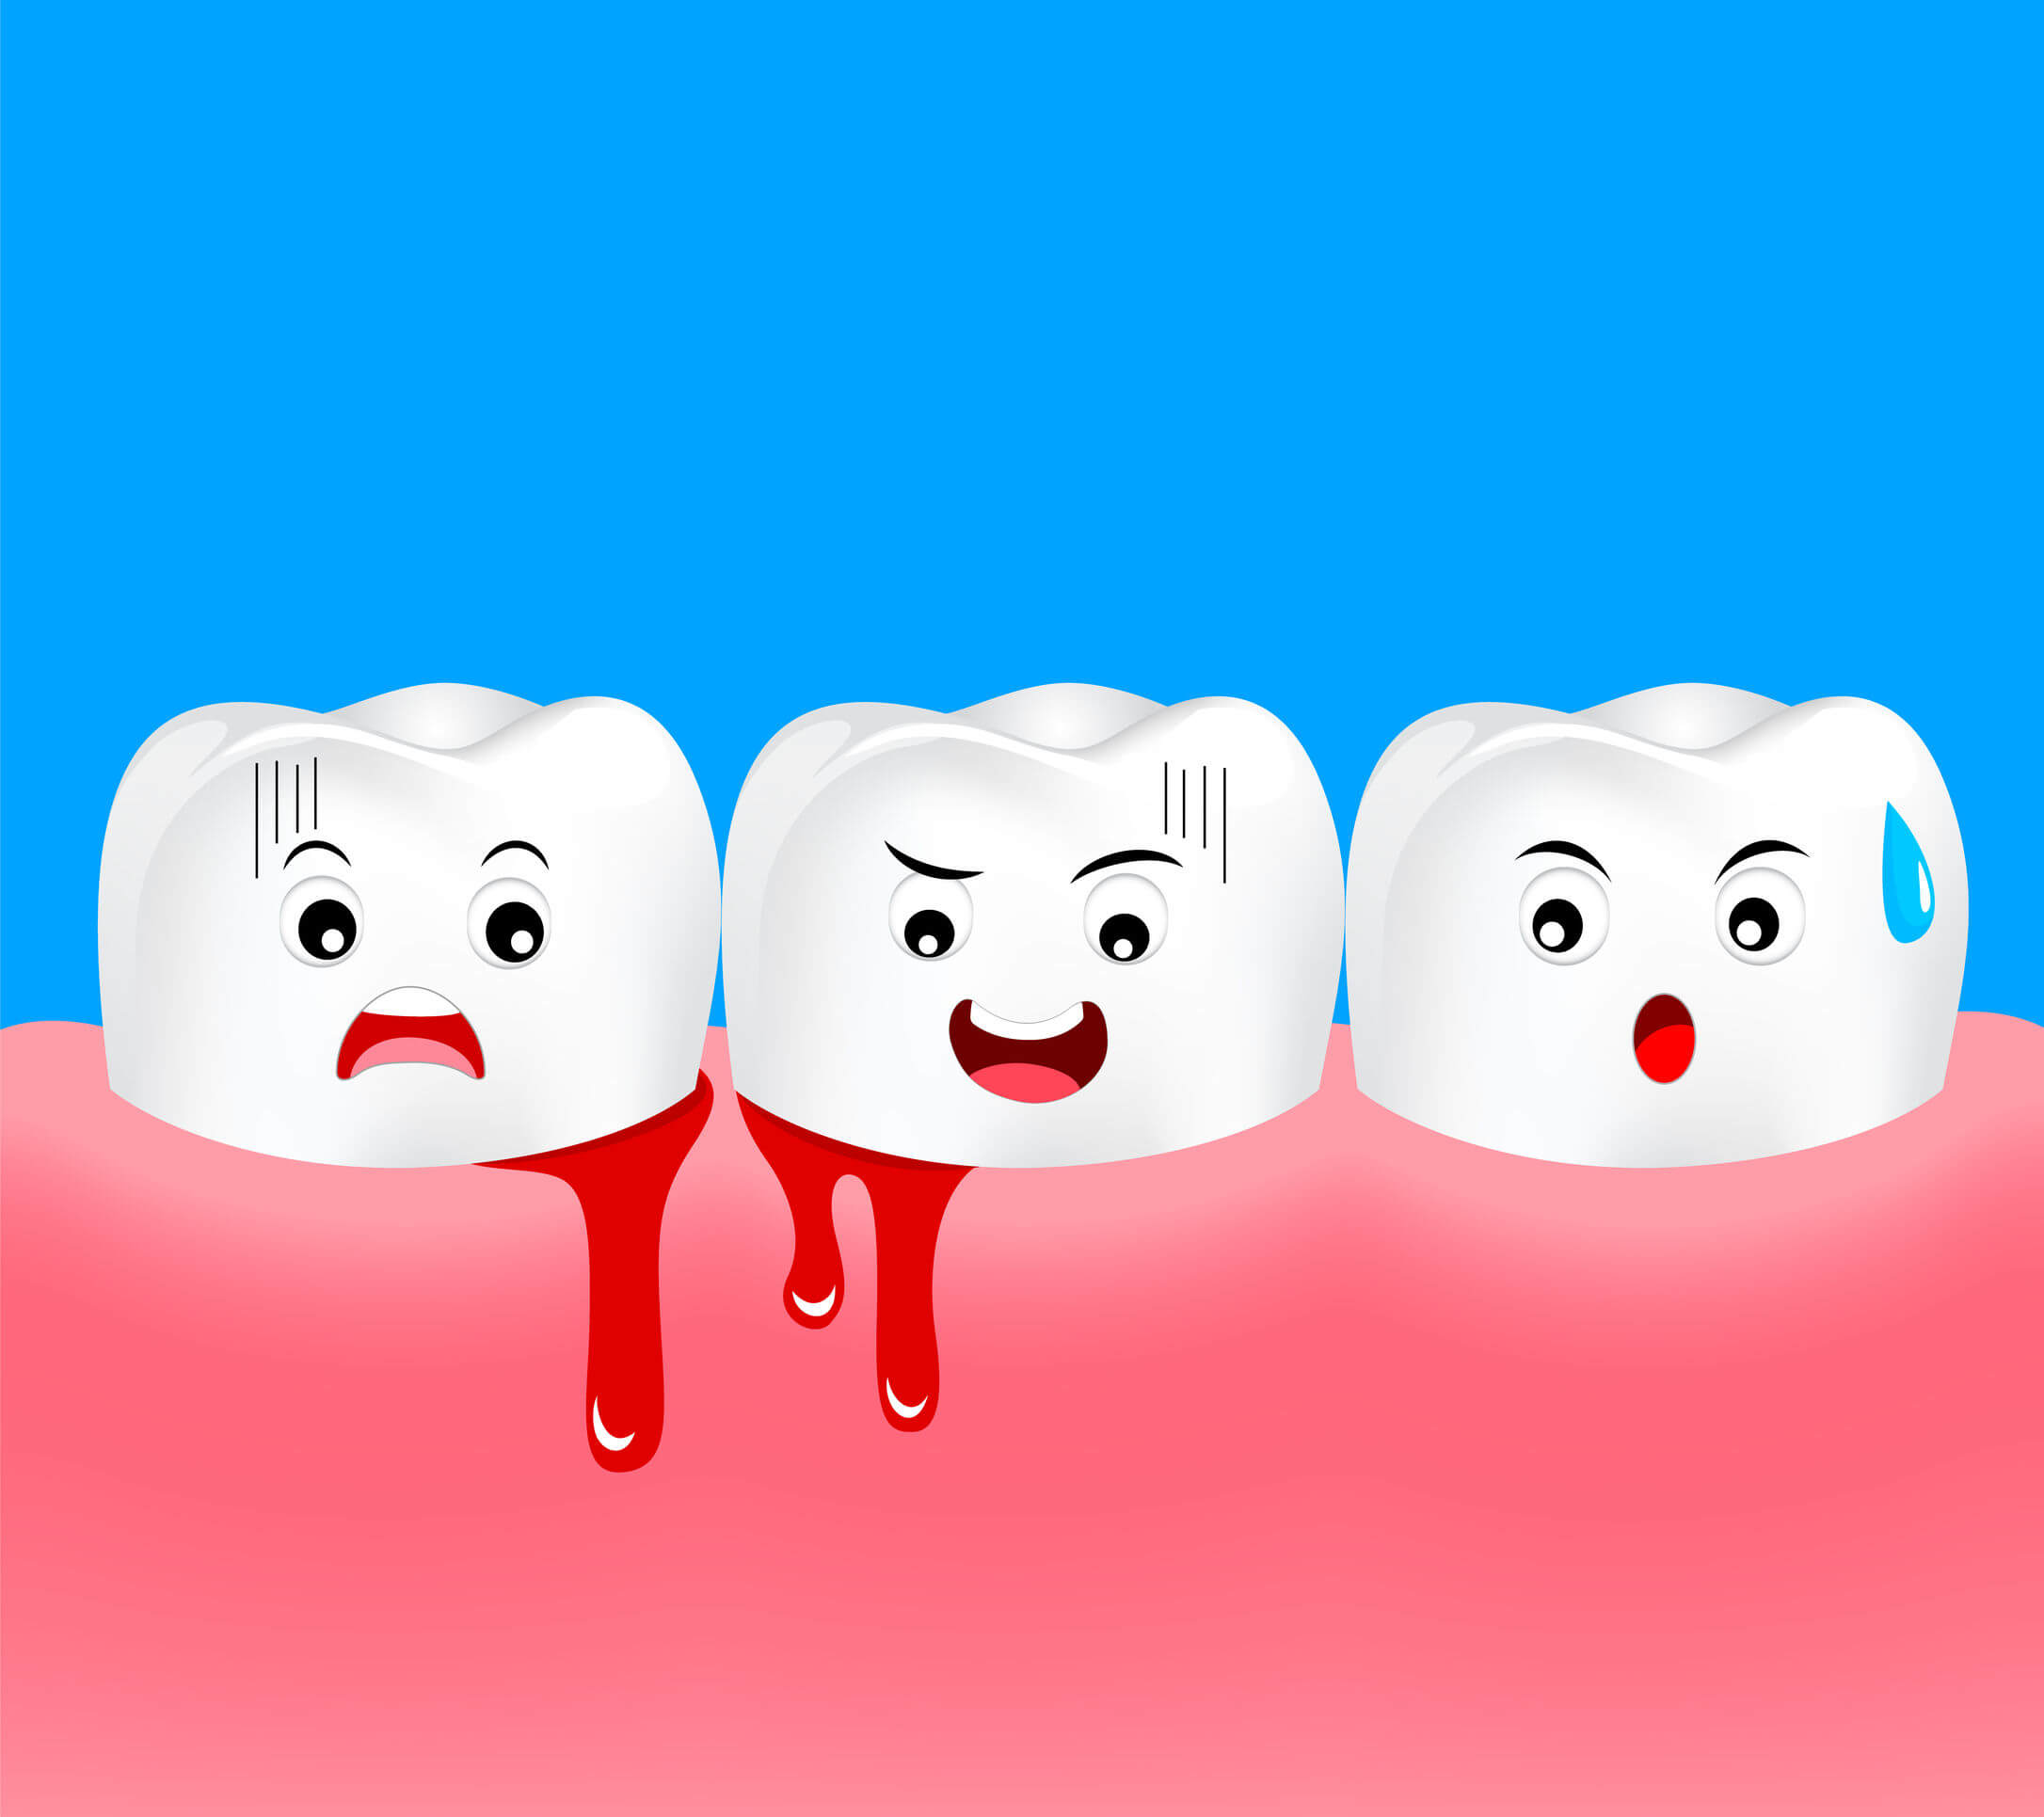 La gingivite chez les enfants n'est pas aussi fréquente que chez les adultes, mais il est nécessaire de la prévenir avec de bonnes habitudes d'hygiène bucco-dentaire.